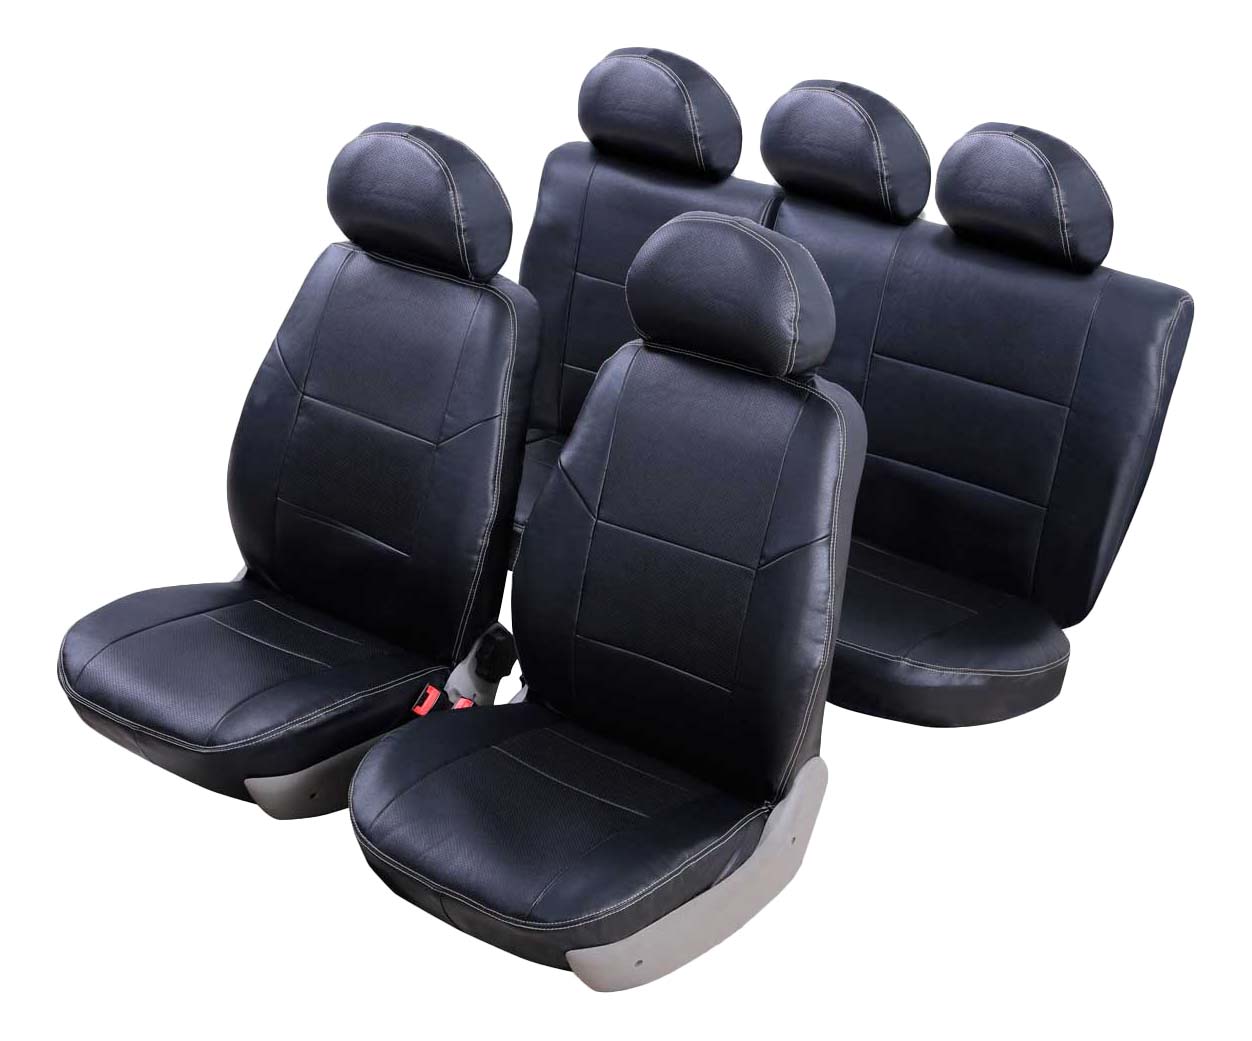 

Комплект чехлов на сиденья SENATOR S1013561, комплект чехлов на сиденья Atlant S1013561 для Renault Sandero 2014-н.в. черный